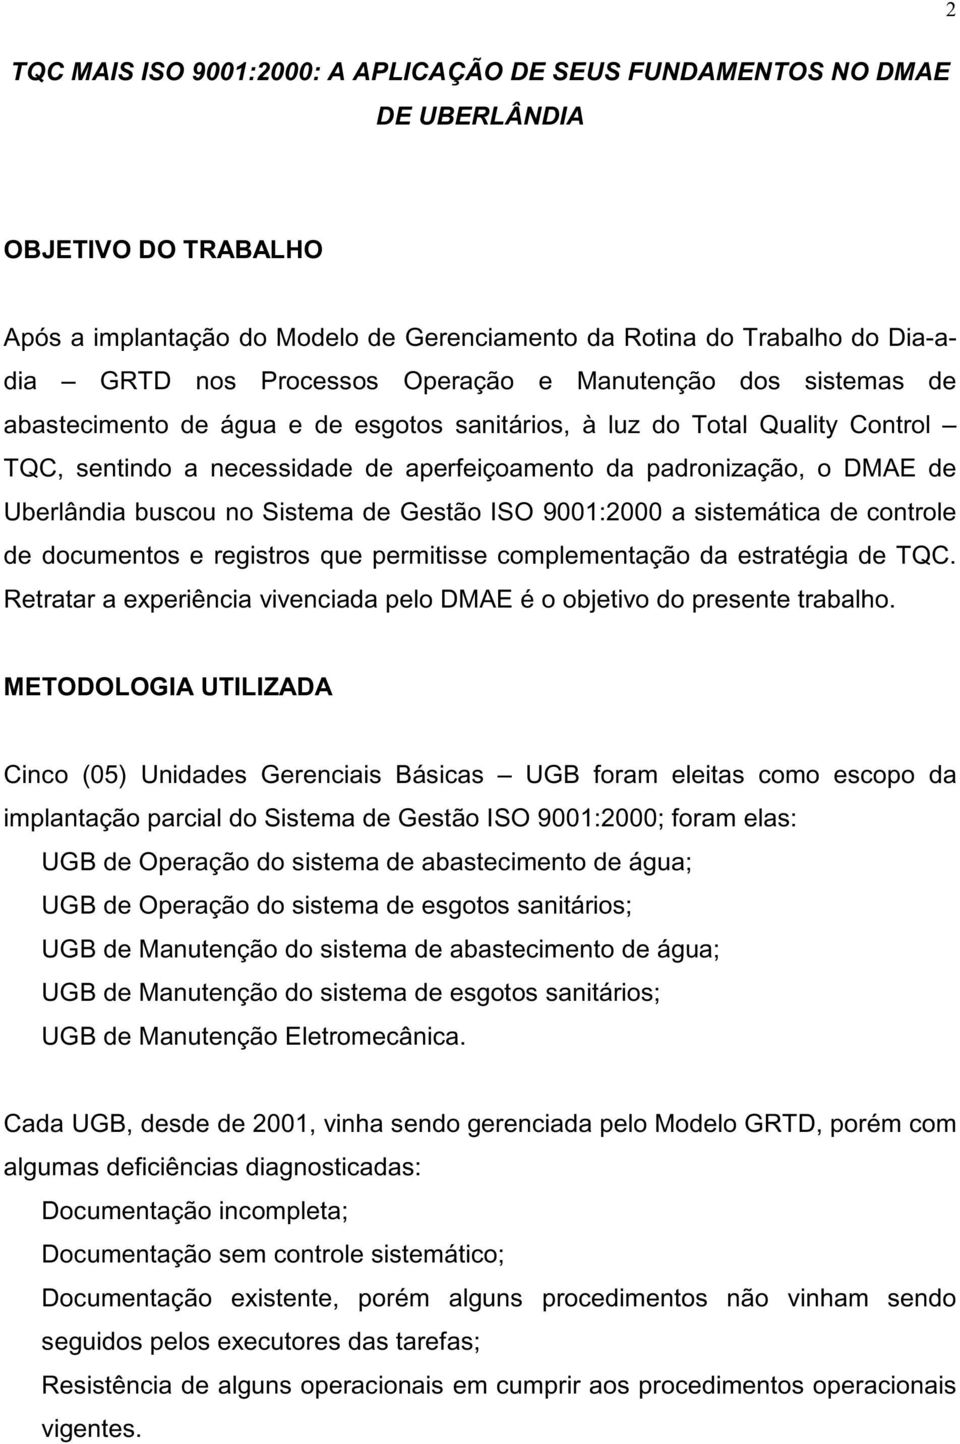 Uberlândia buscou no Sistema de Gestão ISO 9001:2000 a sistemática de controle de documentos e registros que permitisse complementação da estratégia de TQC.